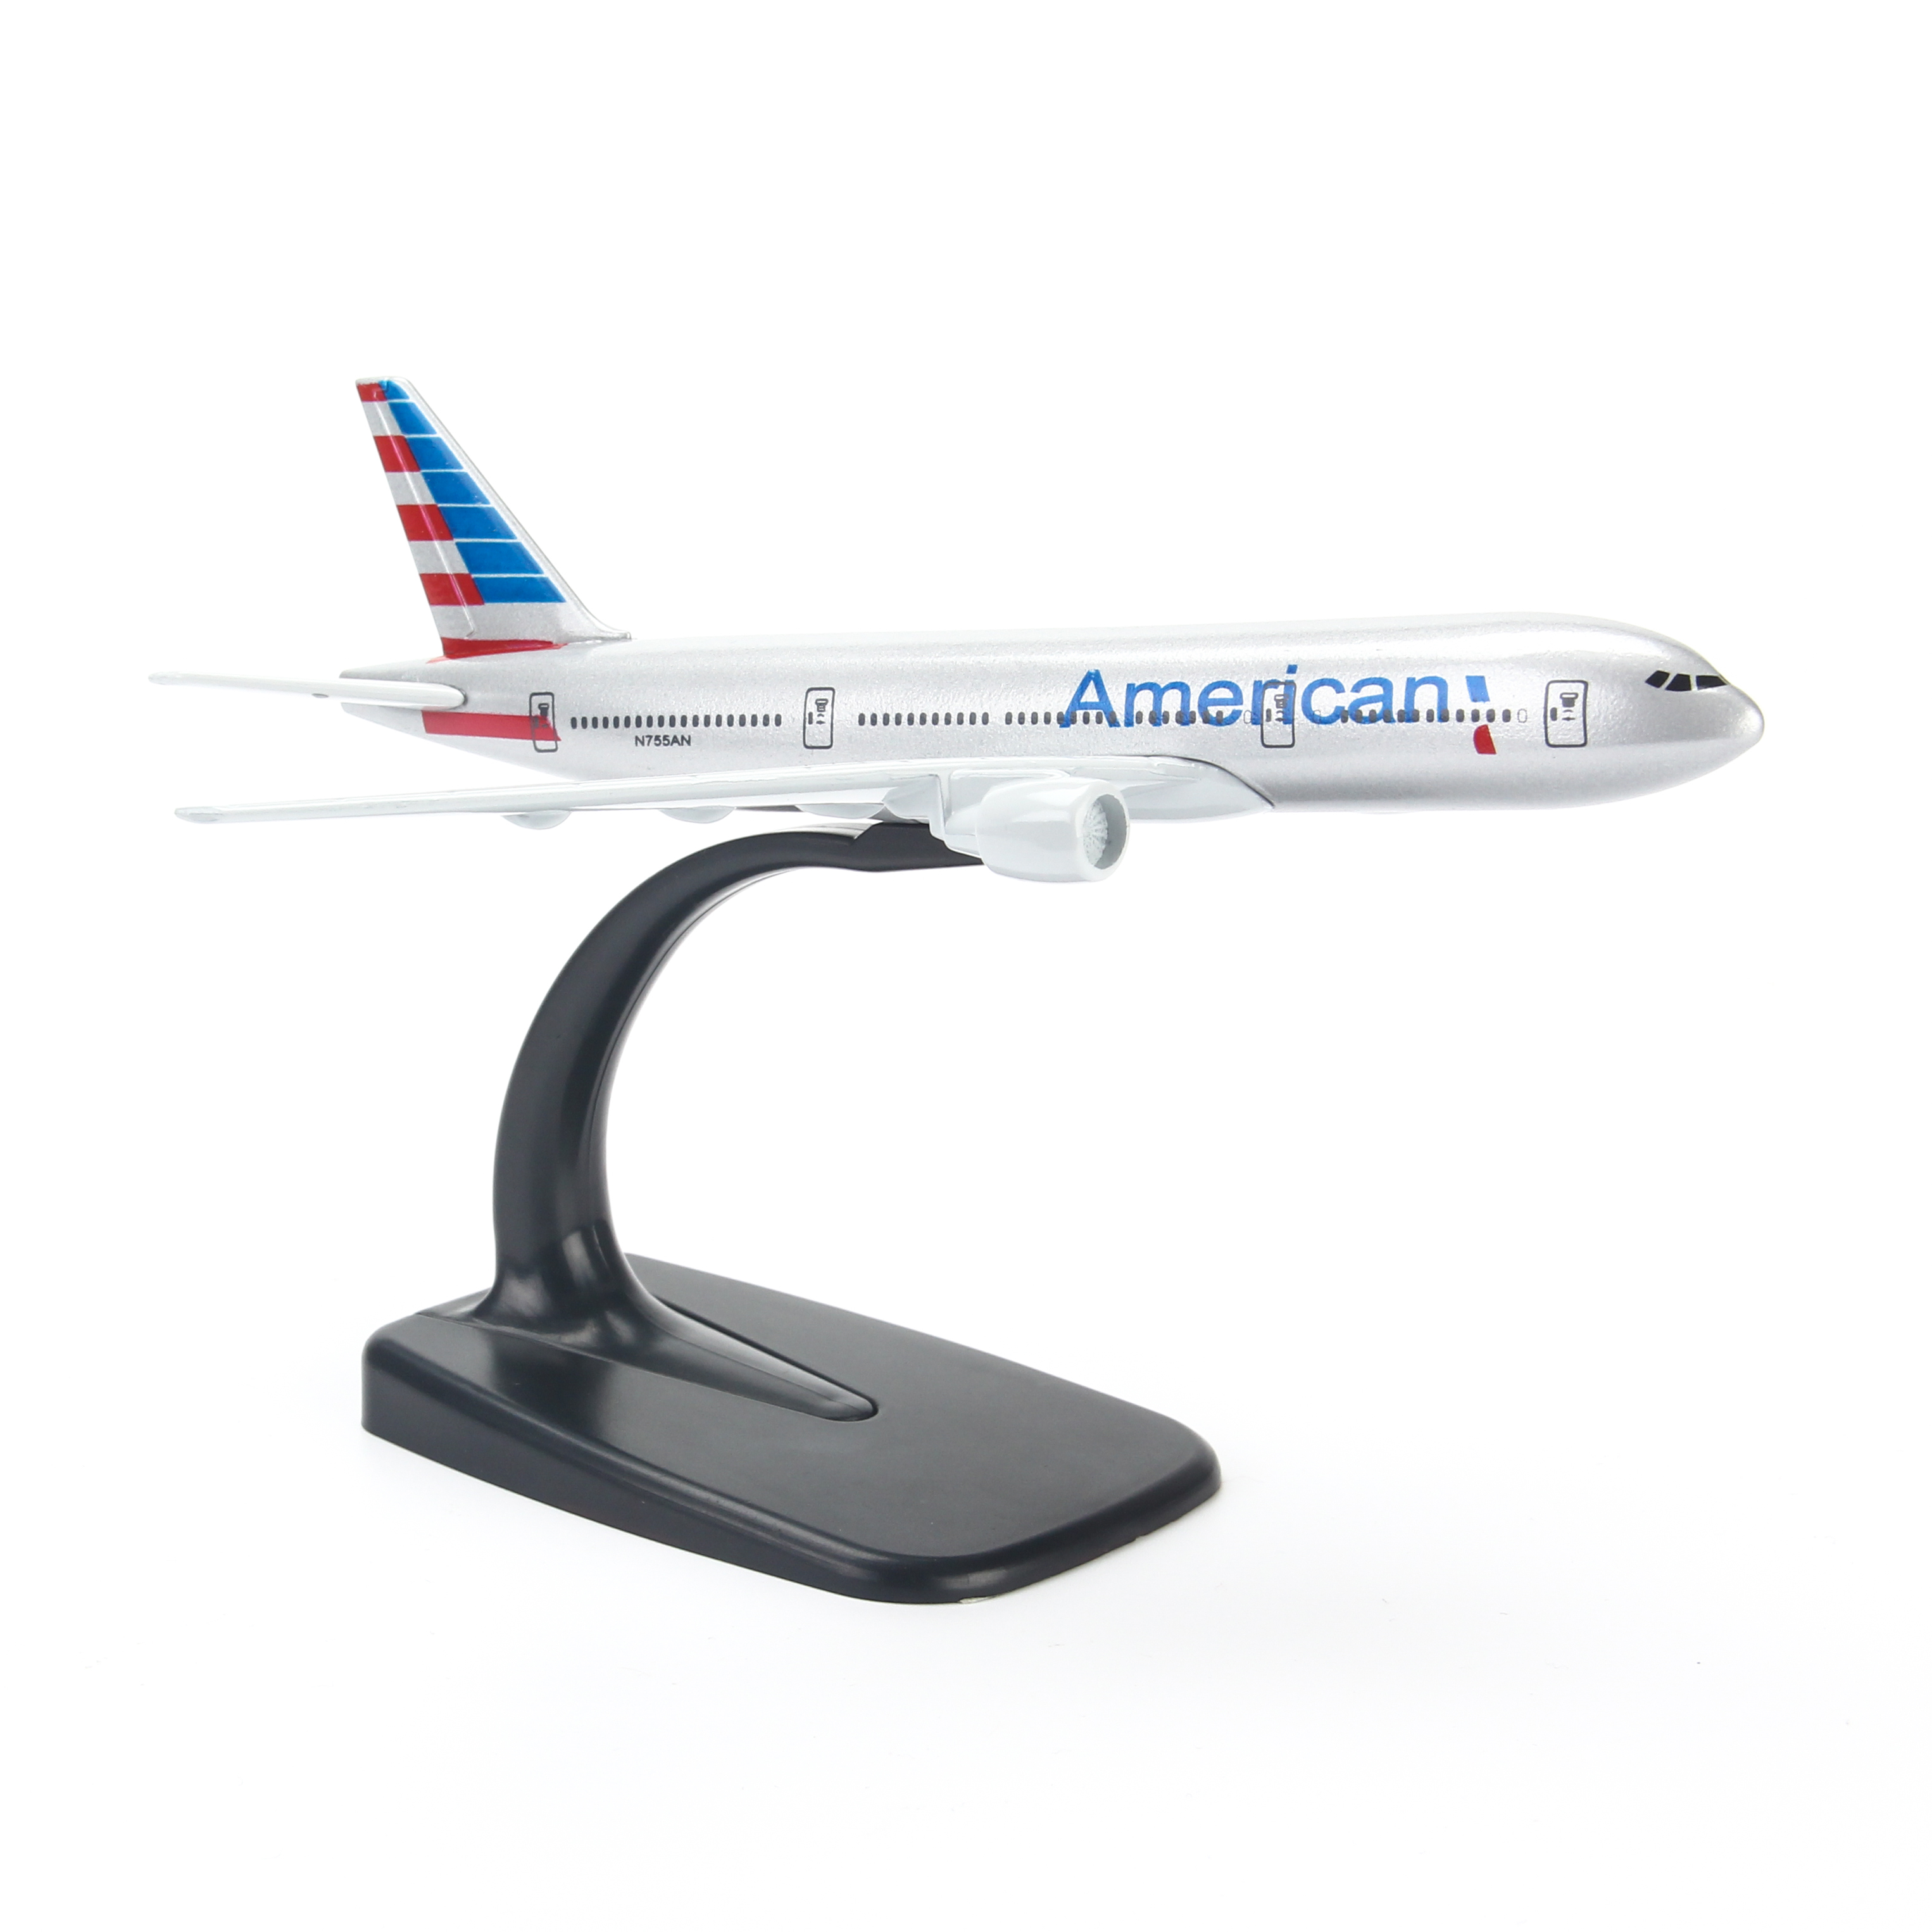 Mô hình máy bay American Airlines (16cm) - Bạc, Xanh dương đậm, Đỏ